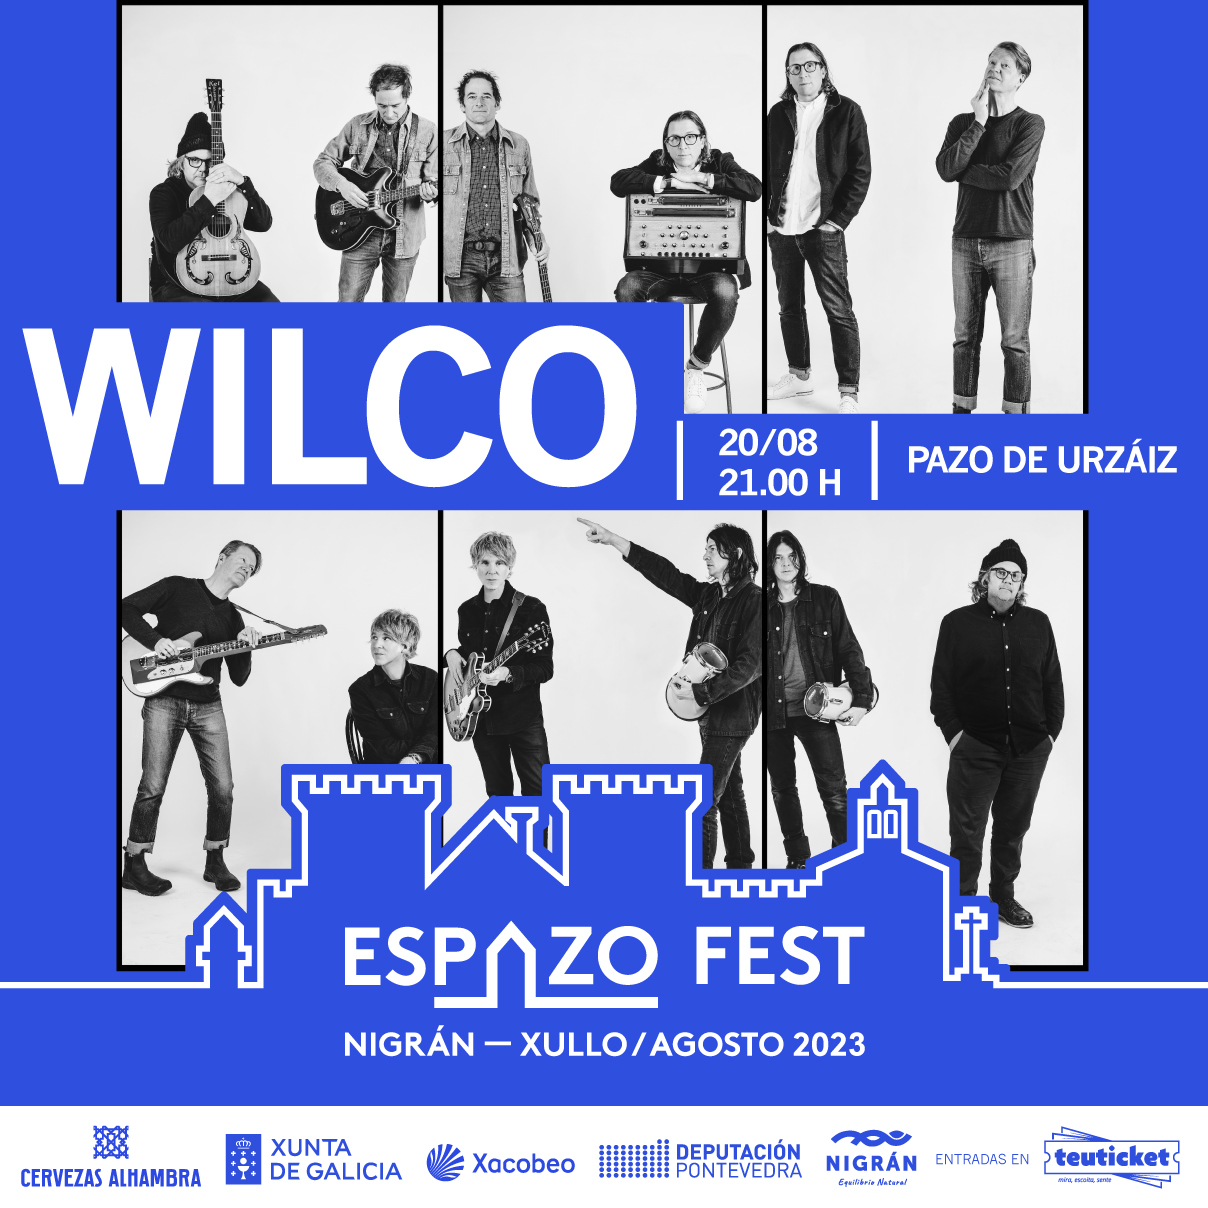 Espazo Fest: Wilco